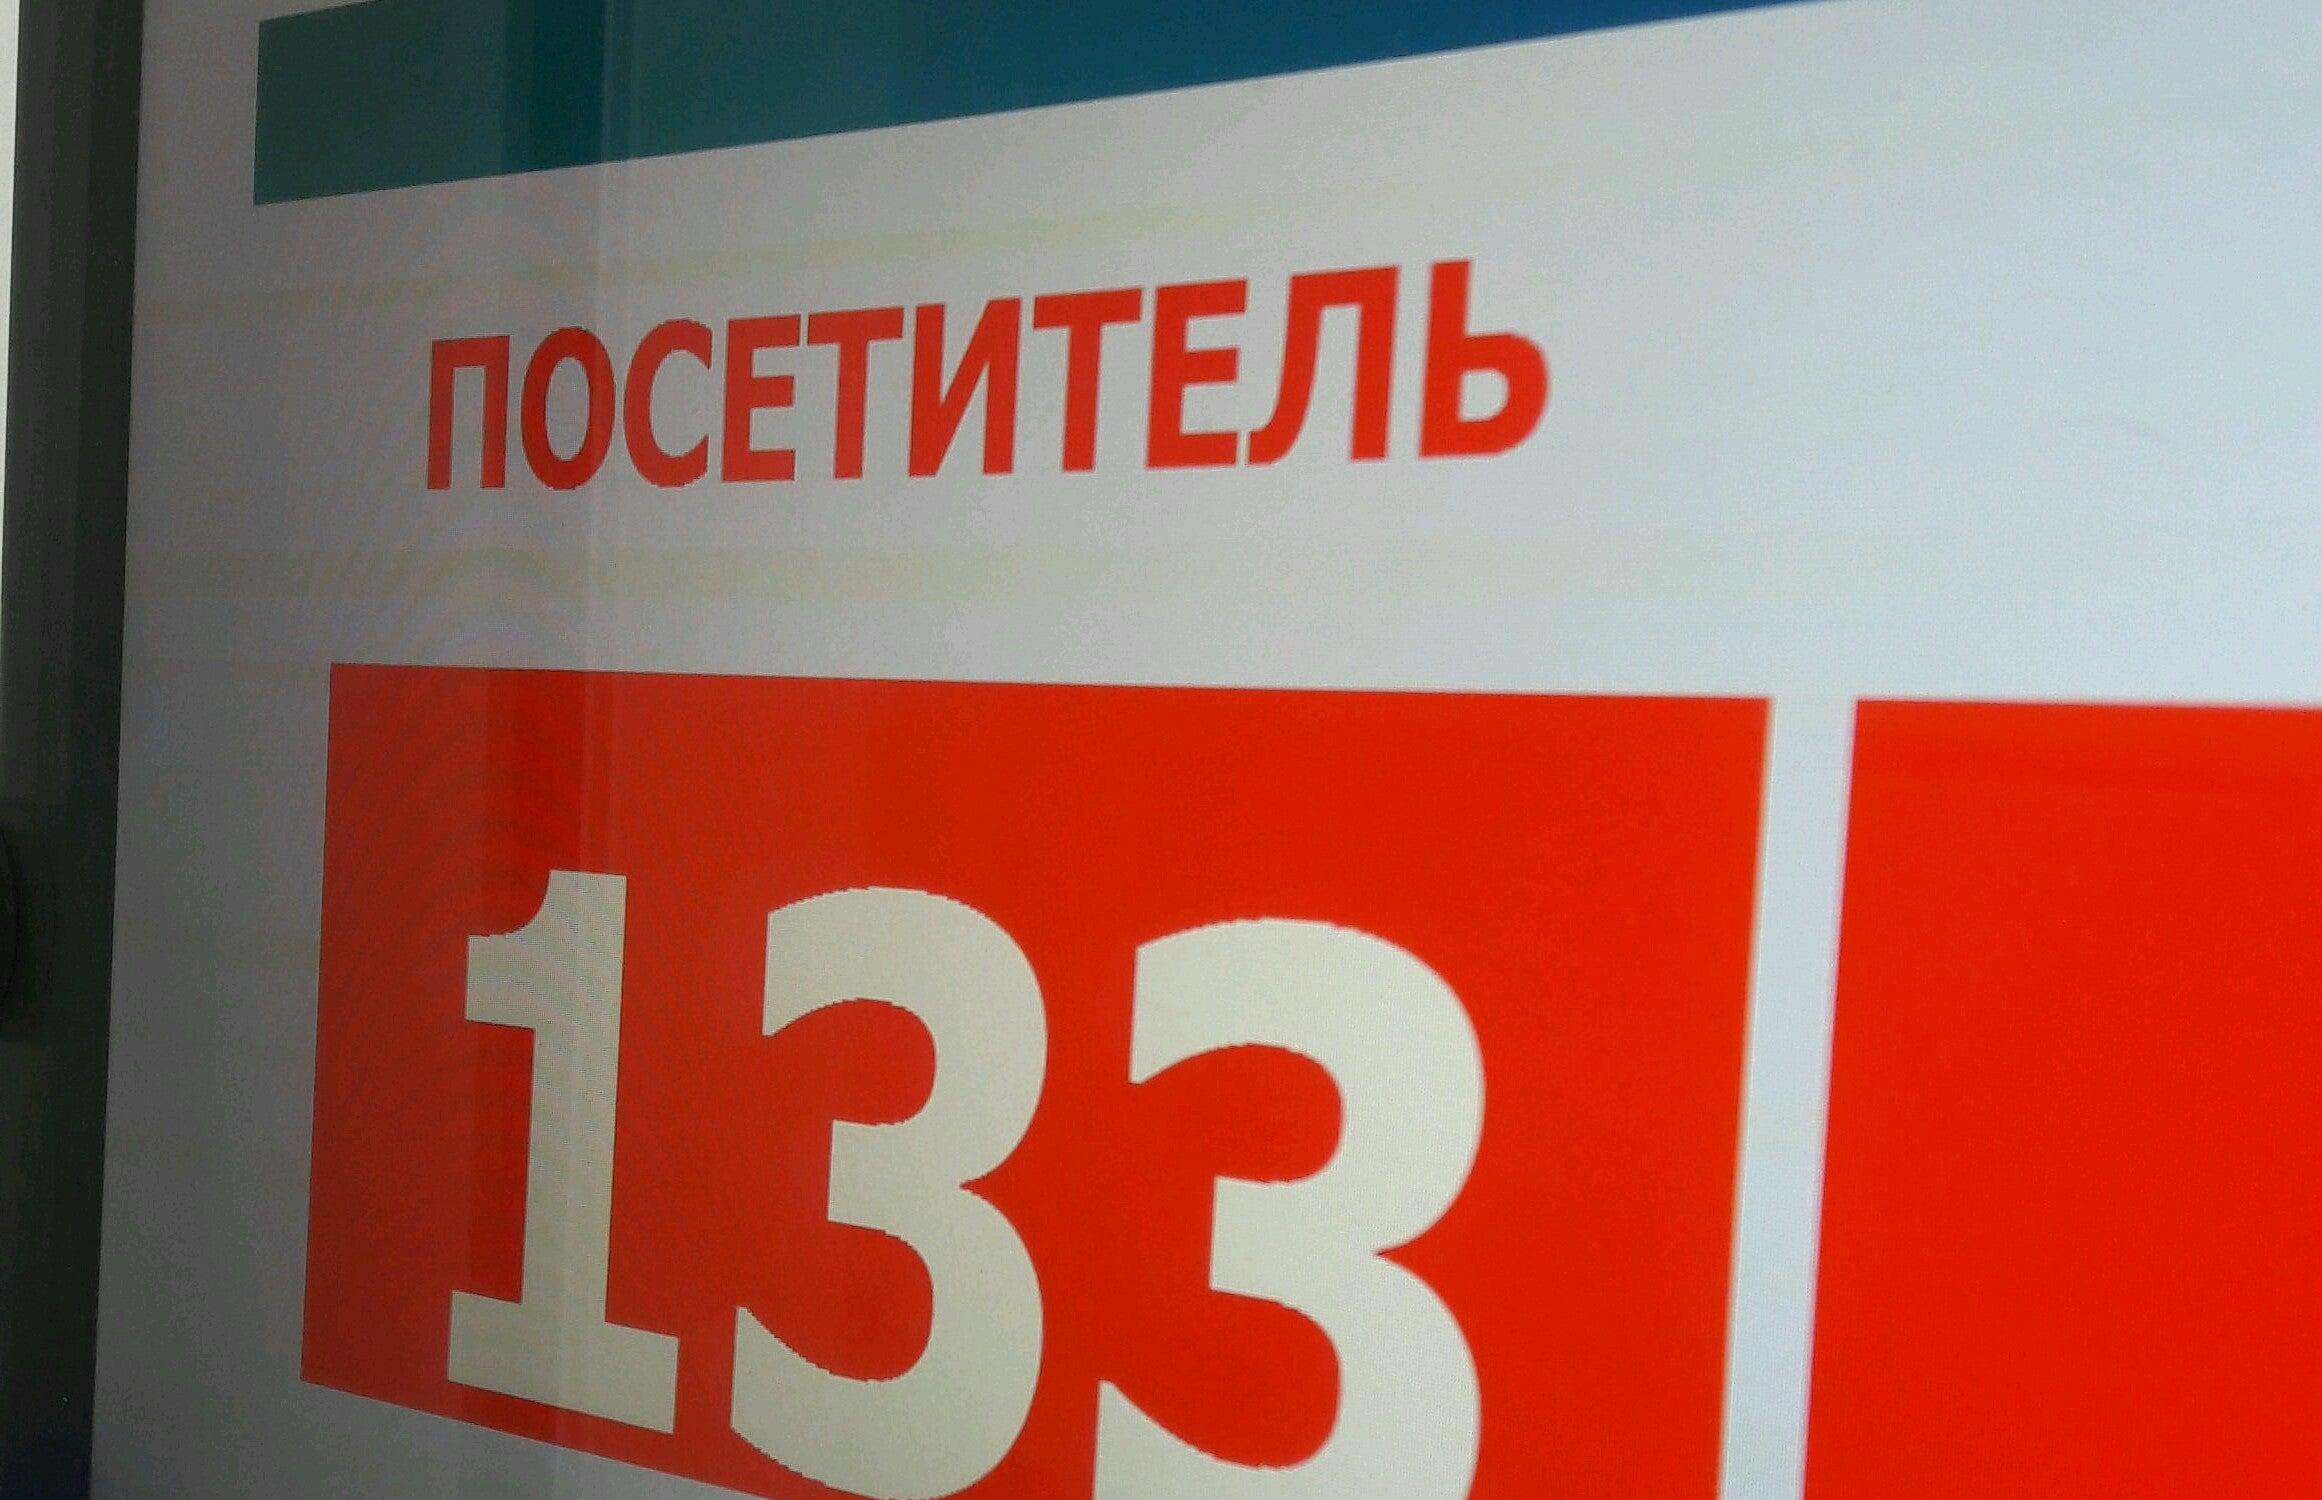 Пенсионный фонд красноярск телефон горячей